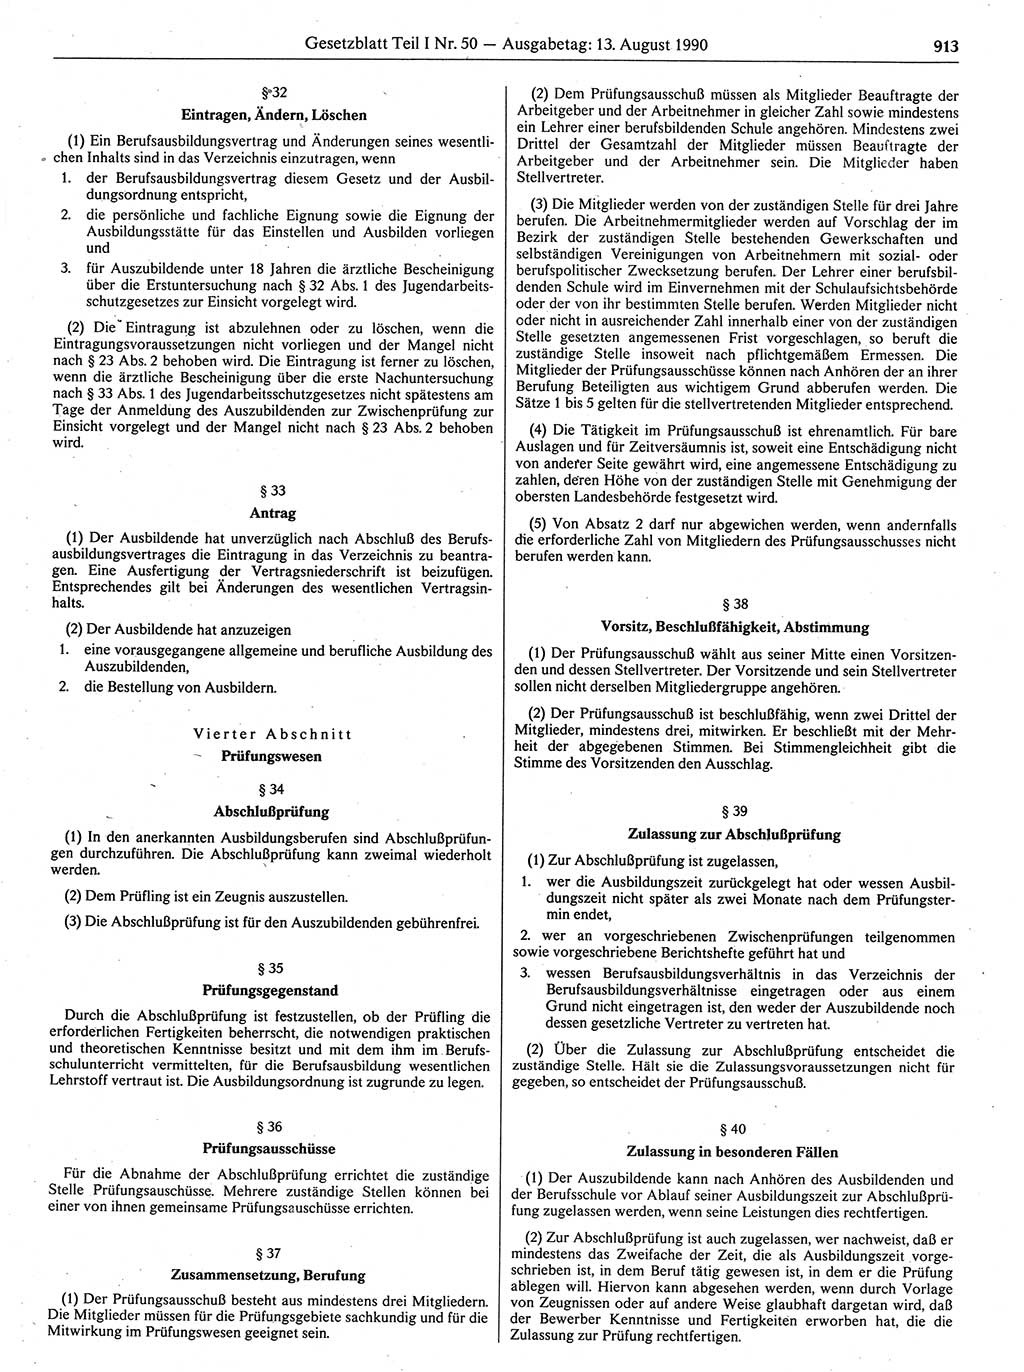 Gesetzblatt (GBl.) der Deutschen Demokratischen Republik (DDR) Teil Ⅰ 1990, Seite 913 (GBl. DDR Ⅰ 1990, S. 913)